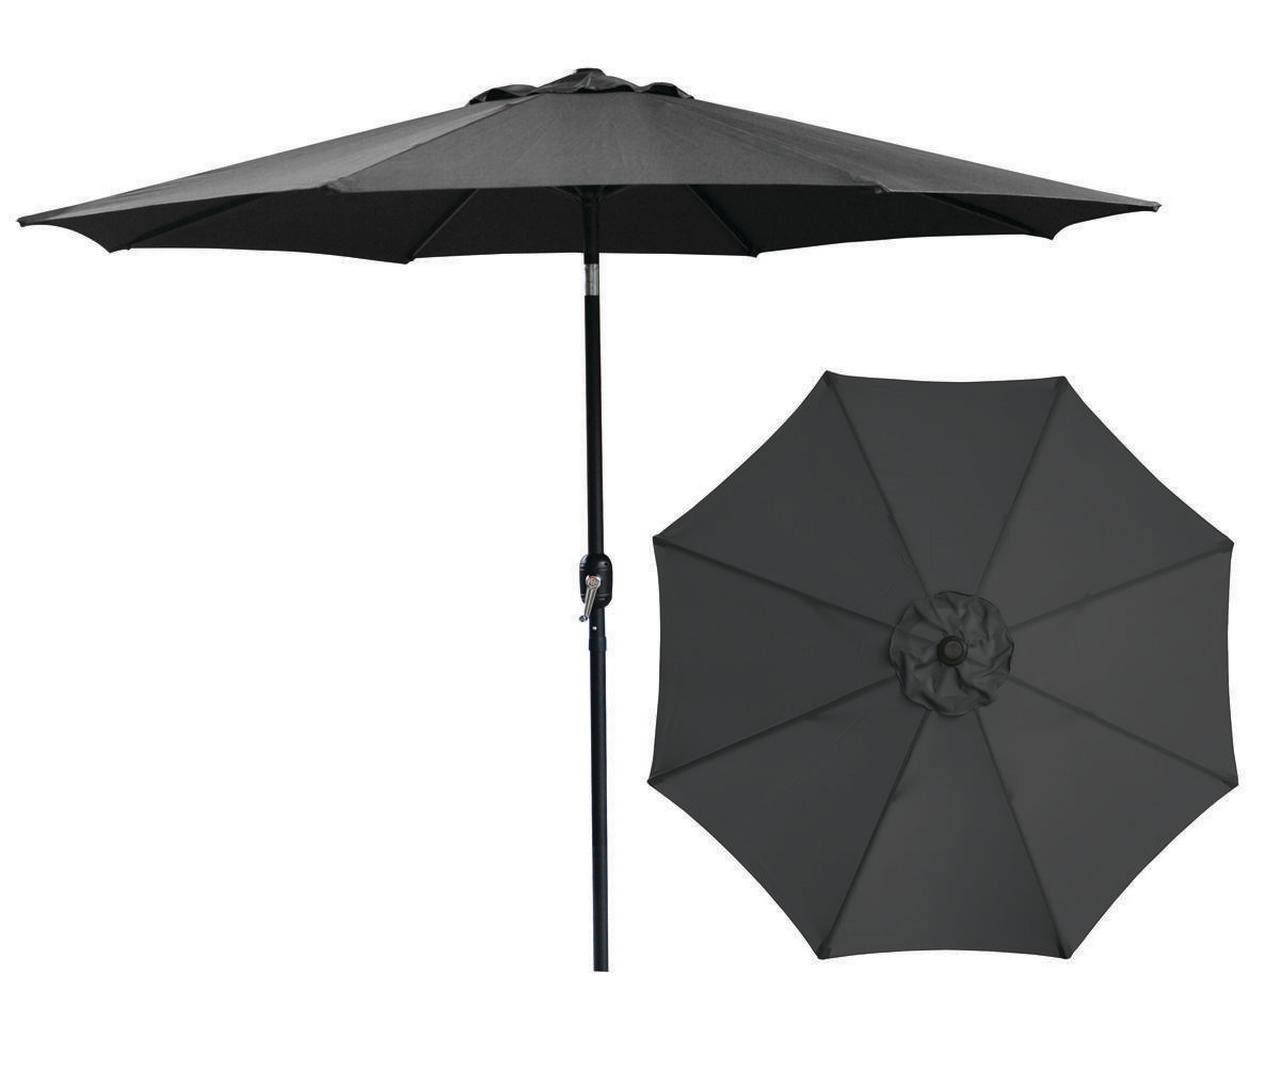 Seasonal Trends Crank Market Umbrella - Black, 9'